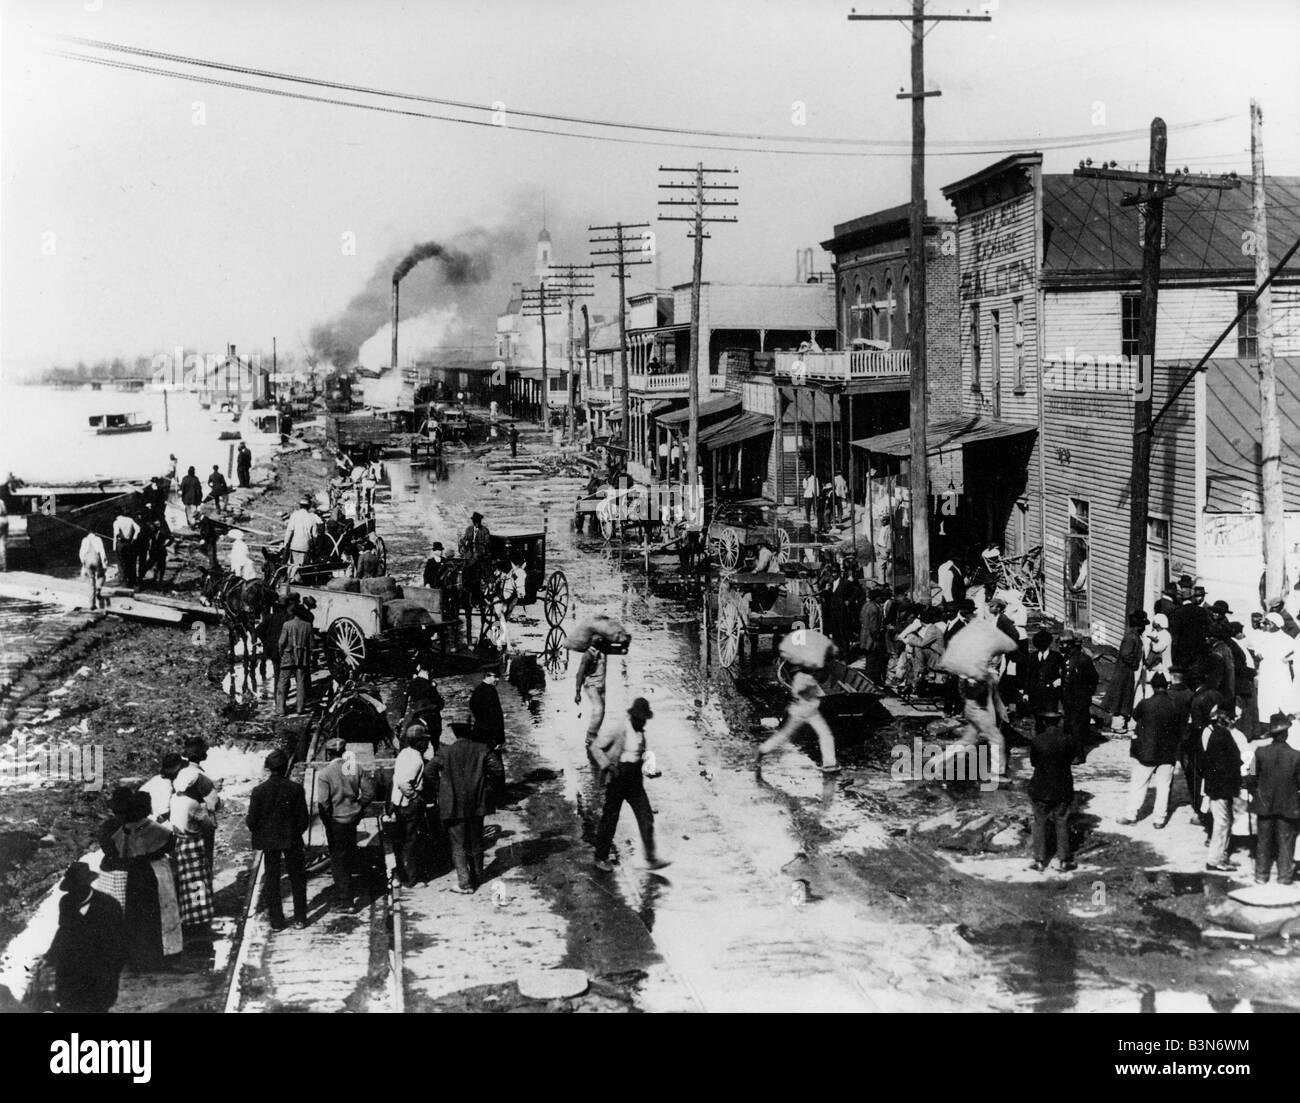 Riverside BLUES scène générique dans le sud des États-Unis vers 1920 Banque D'Images